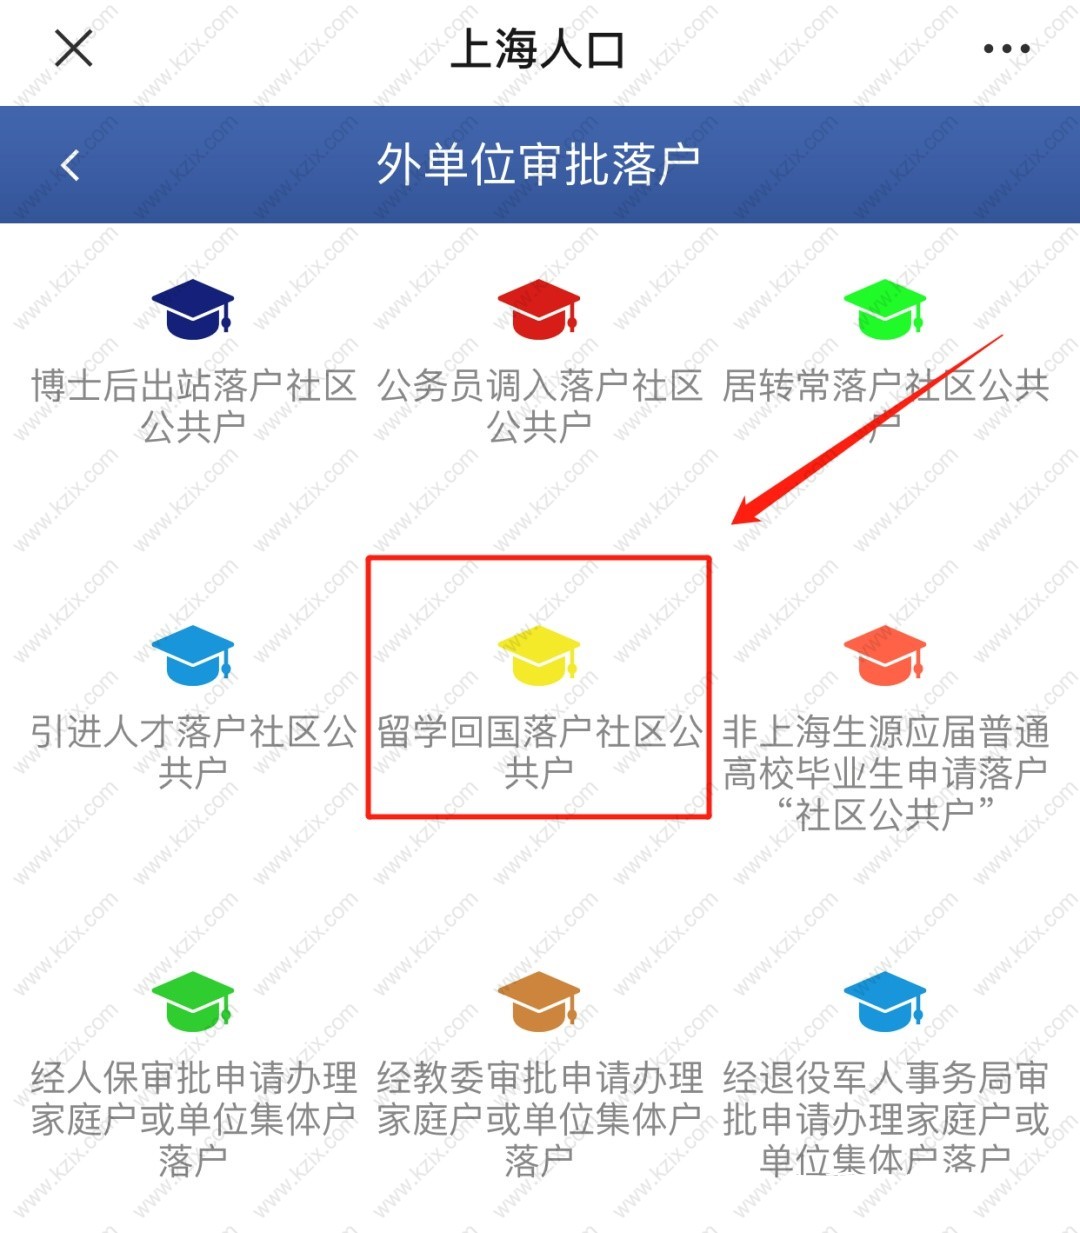 上海留学生办理准迁证流程